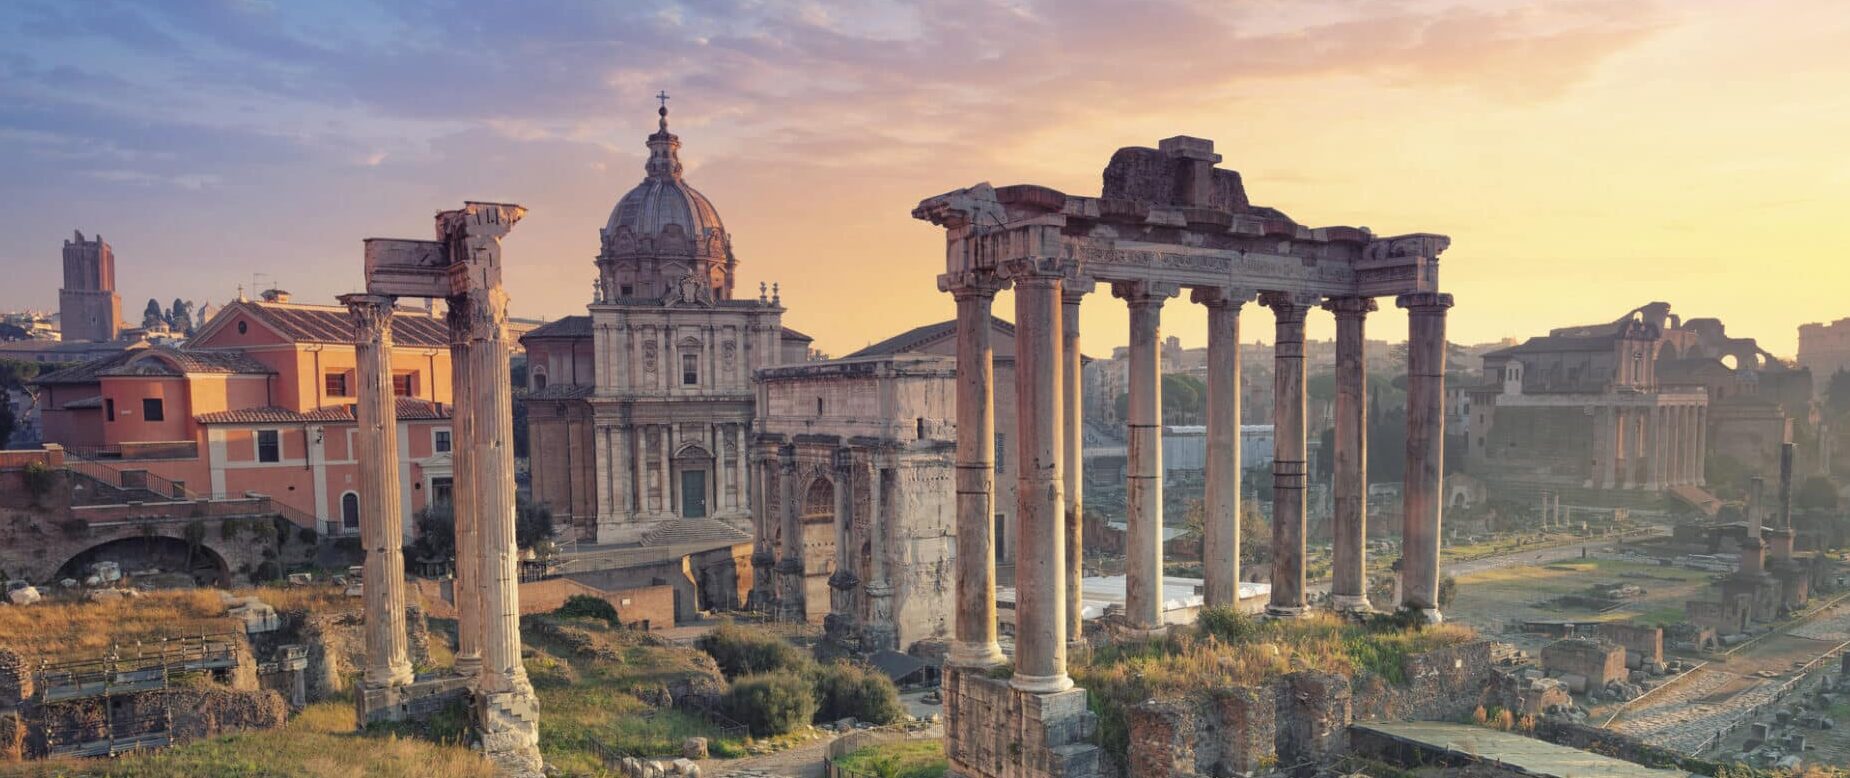 Roman Forum- Rome, Italy